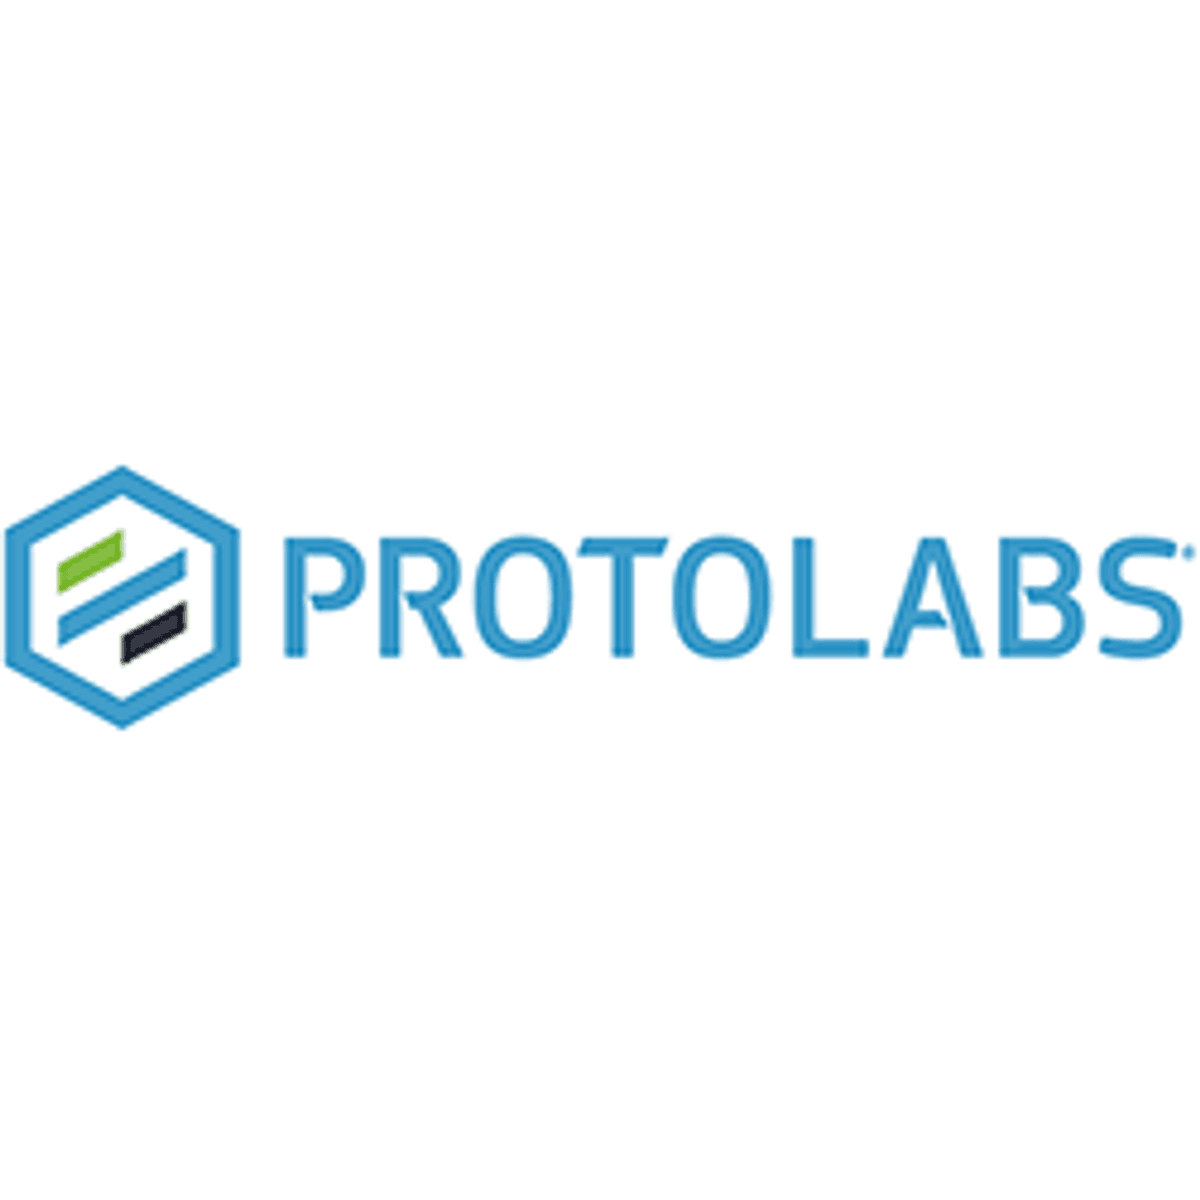 Protolabs verwerft online productieplatform 3D Hubs image